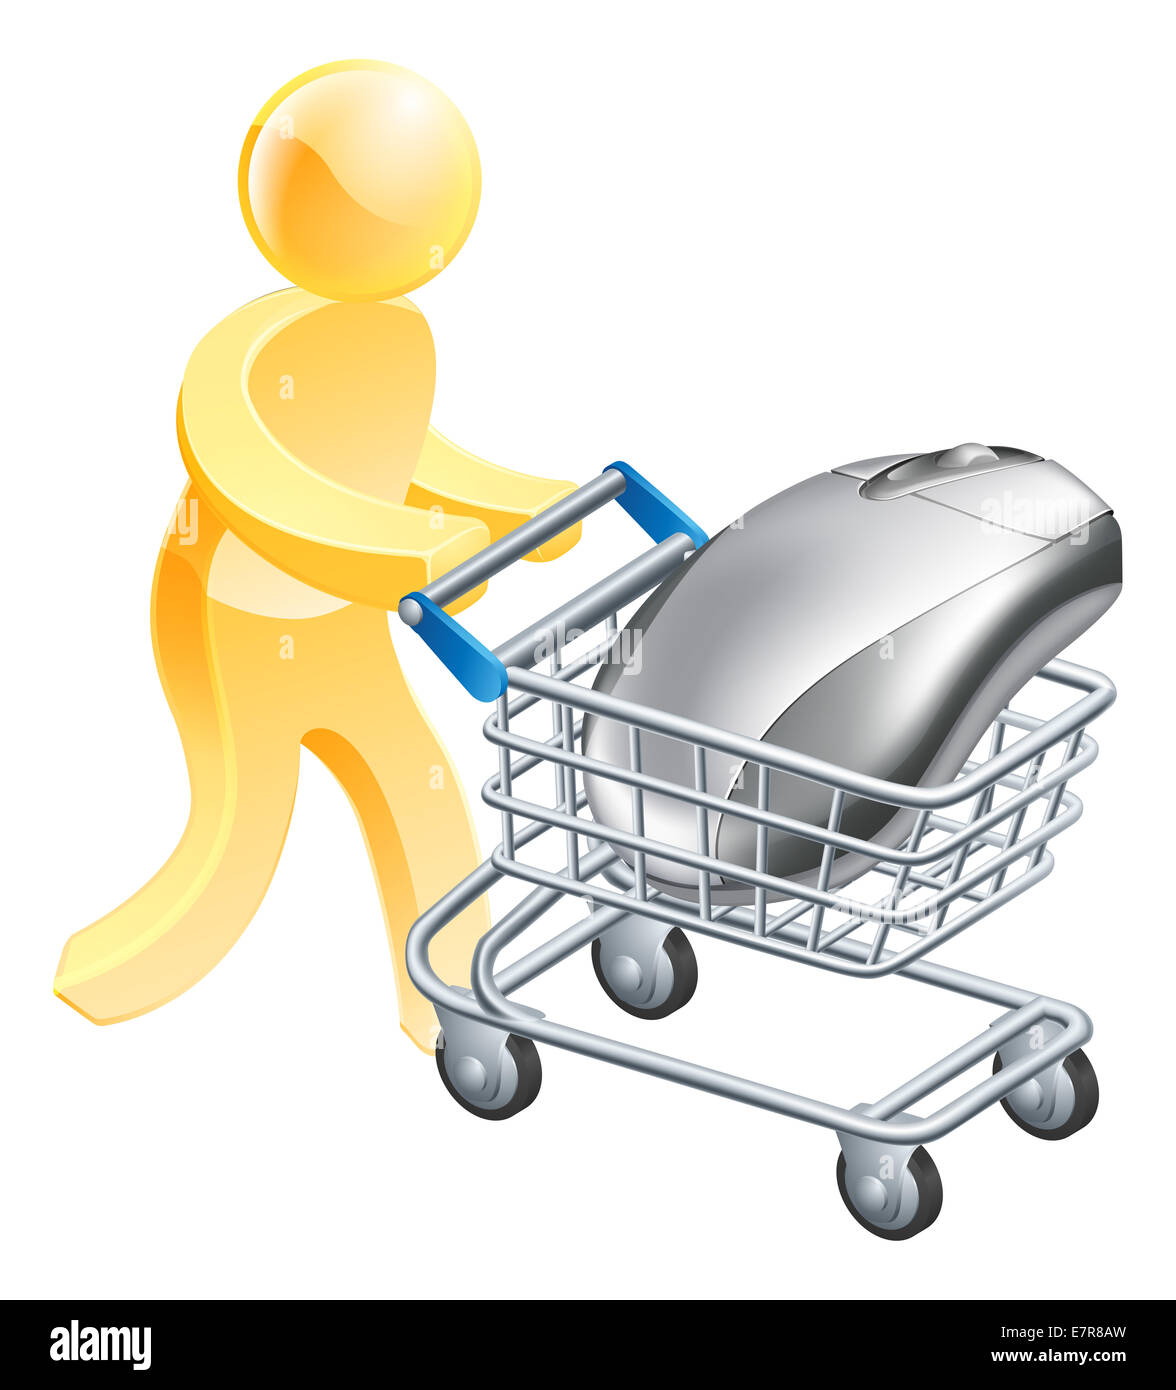 Un homme shopping ou le chariot avec une souris d'ordinateur. Concept pour internet achat en ligne ou achat d'ordinateurs Banque D'Images